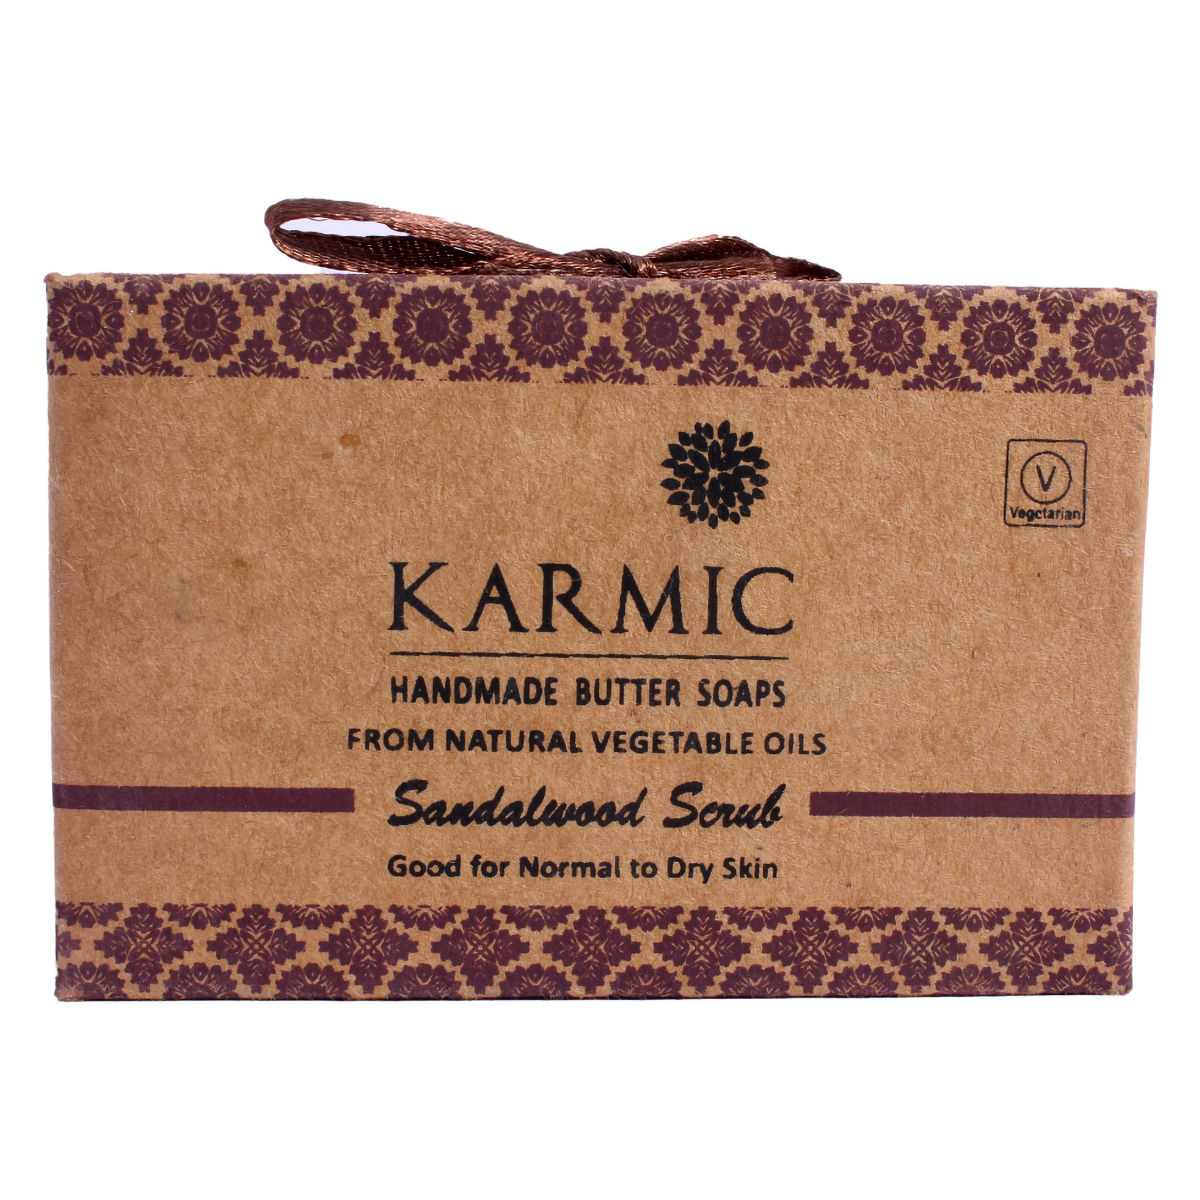 Karmic Handmade Butter Soaps Sandalwood Scrub 125G, Pack of 1 